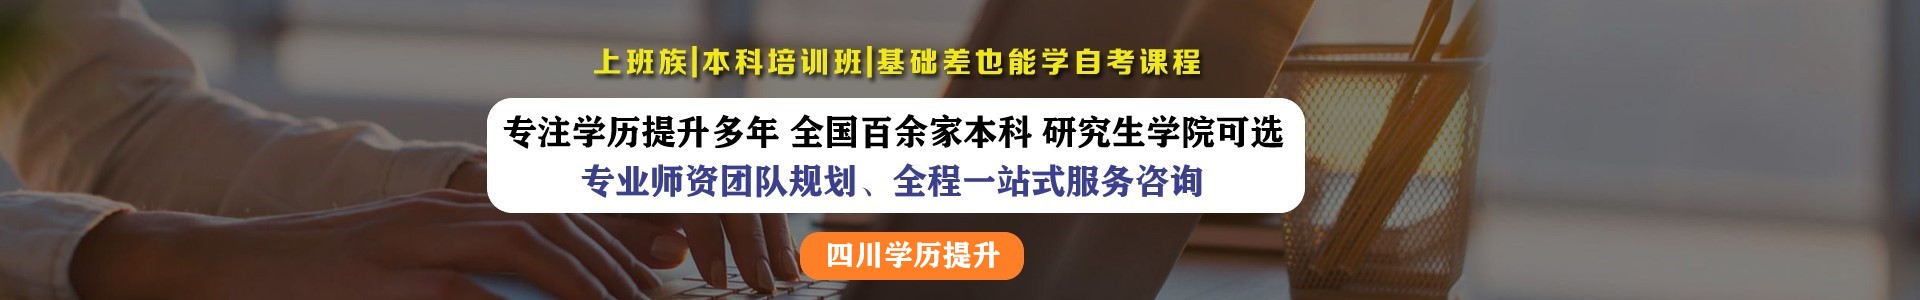 四川省学历提升培训机构